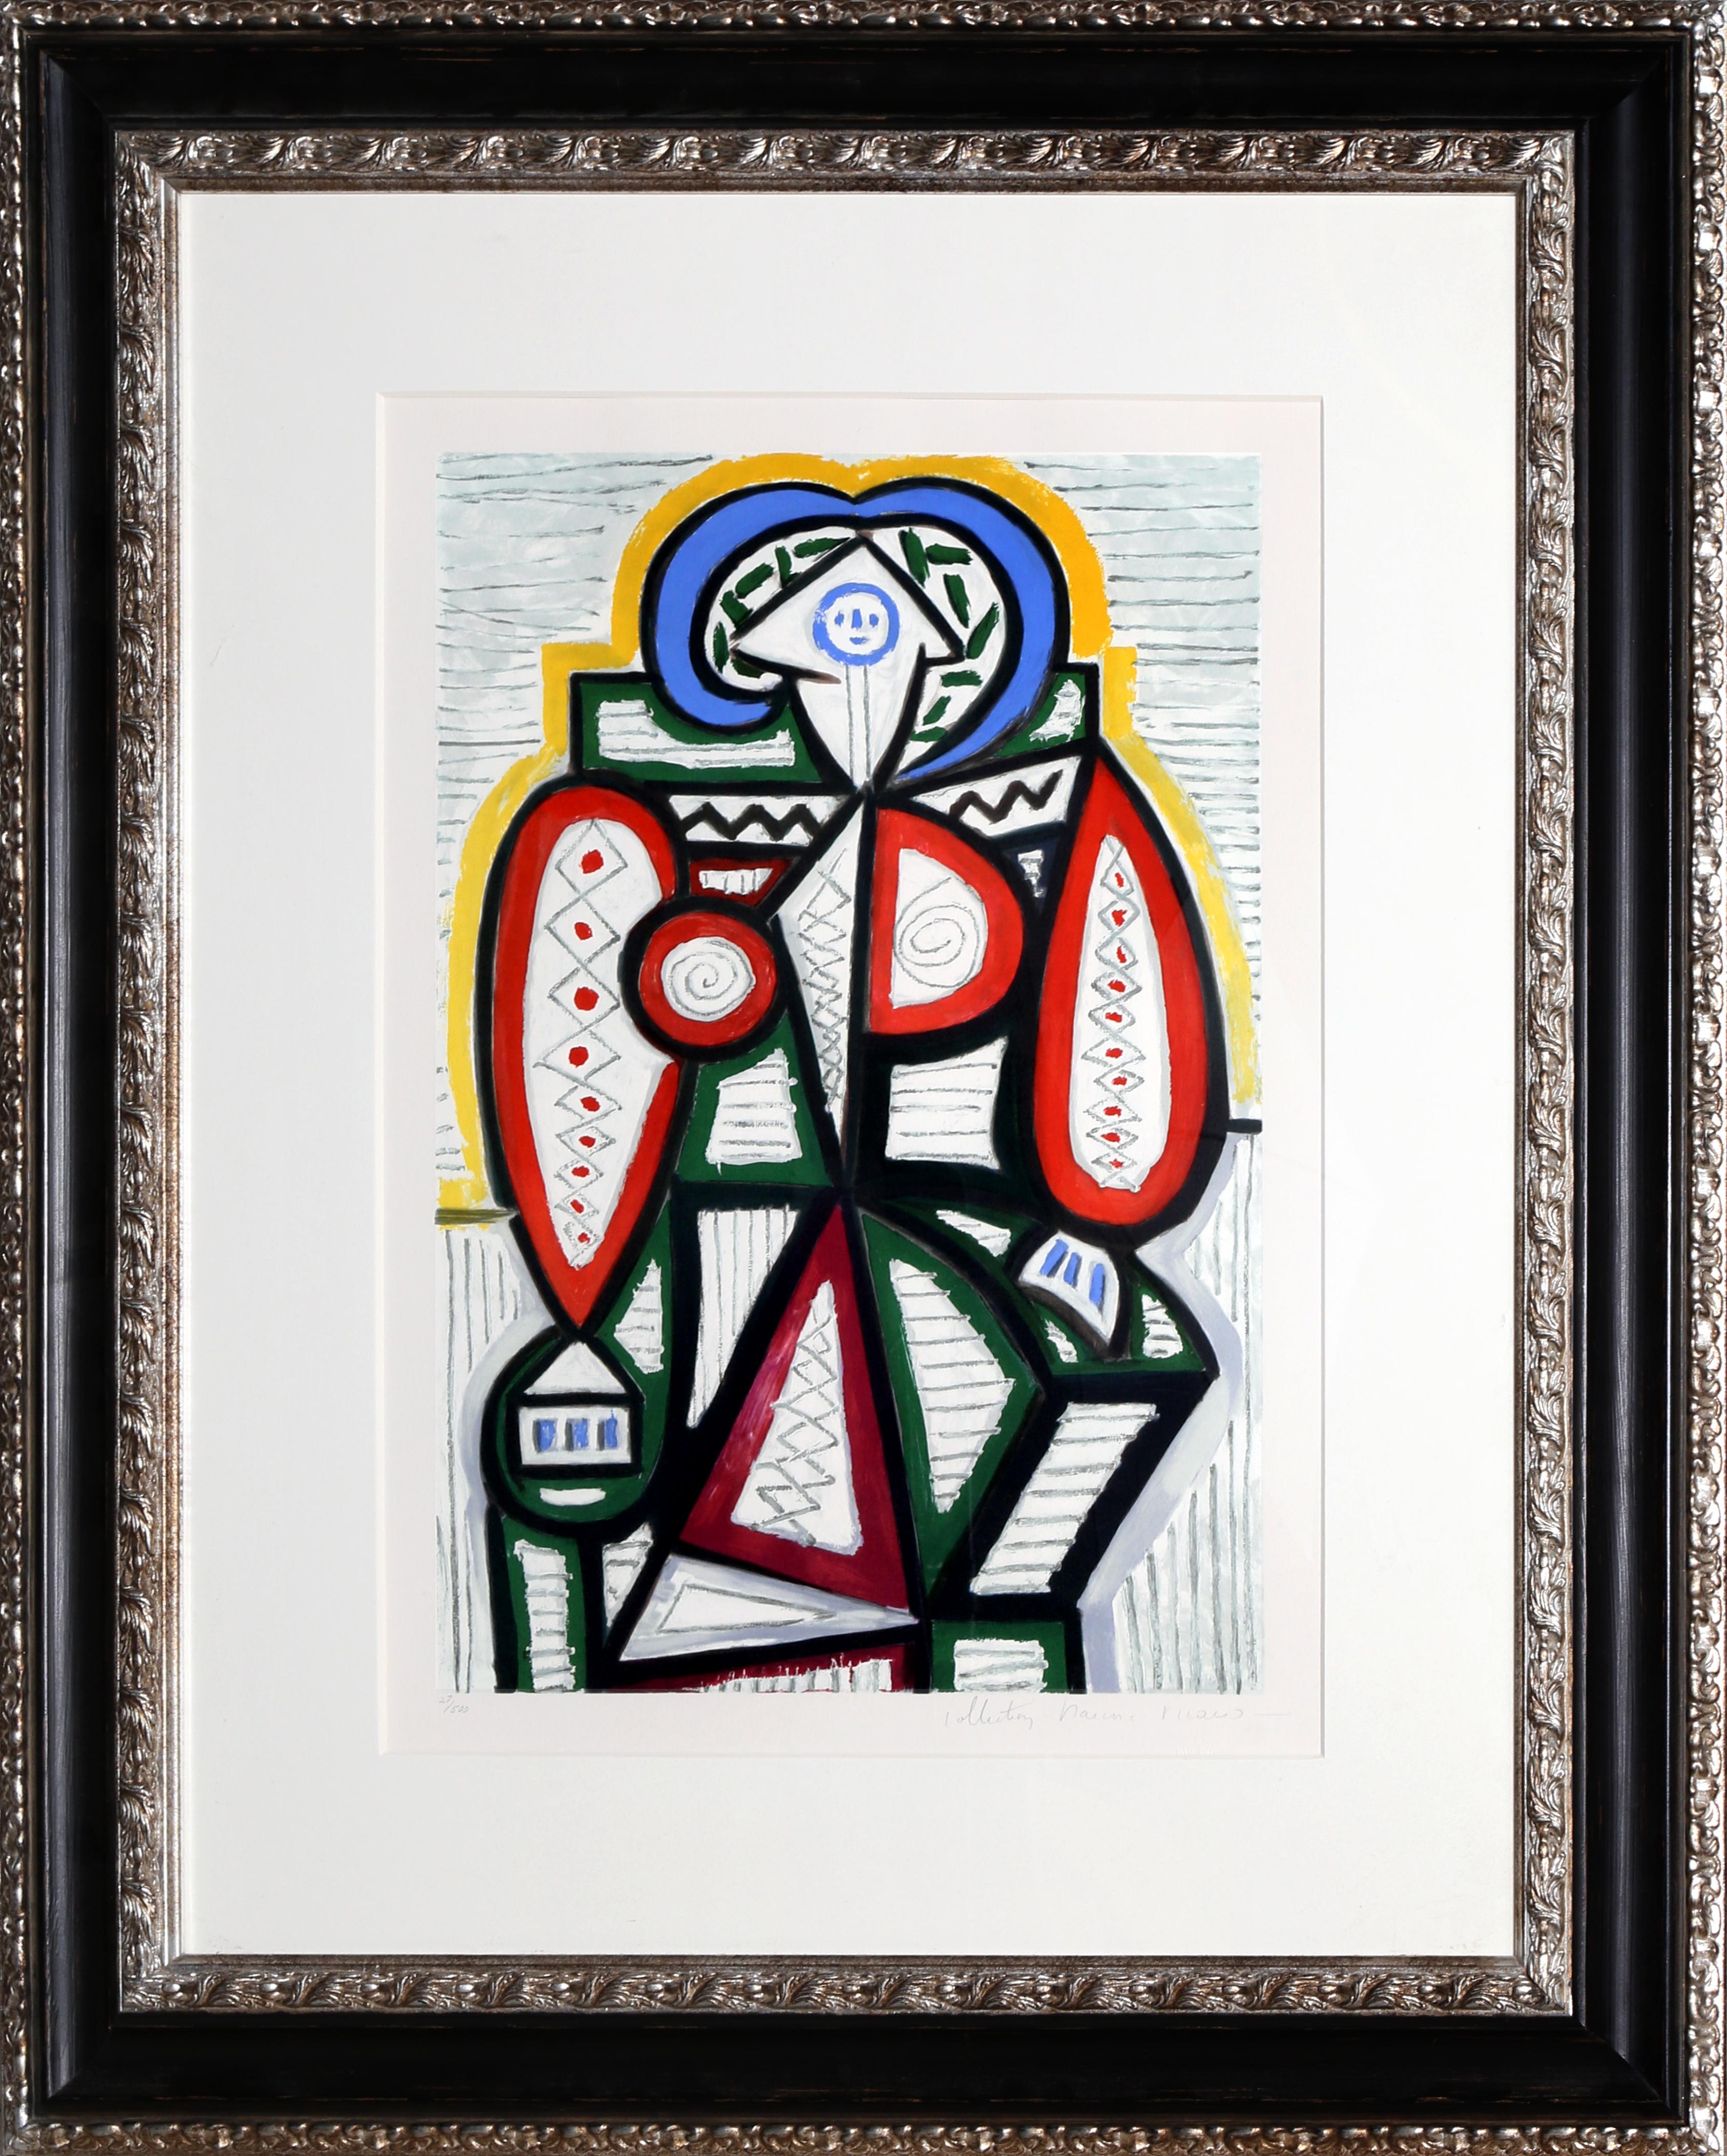 Eine Lithographie aus der Marina Picasso Estate Collection nach dem Gemälde "Femme Assise" von Pablo Picasso. Das Originalgemälde wurde 1947 fertiggestellt. In den 1970er Jahren, nach Picassos Tod, autorisierte Marina Picasso, seine Enkelin, die